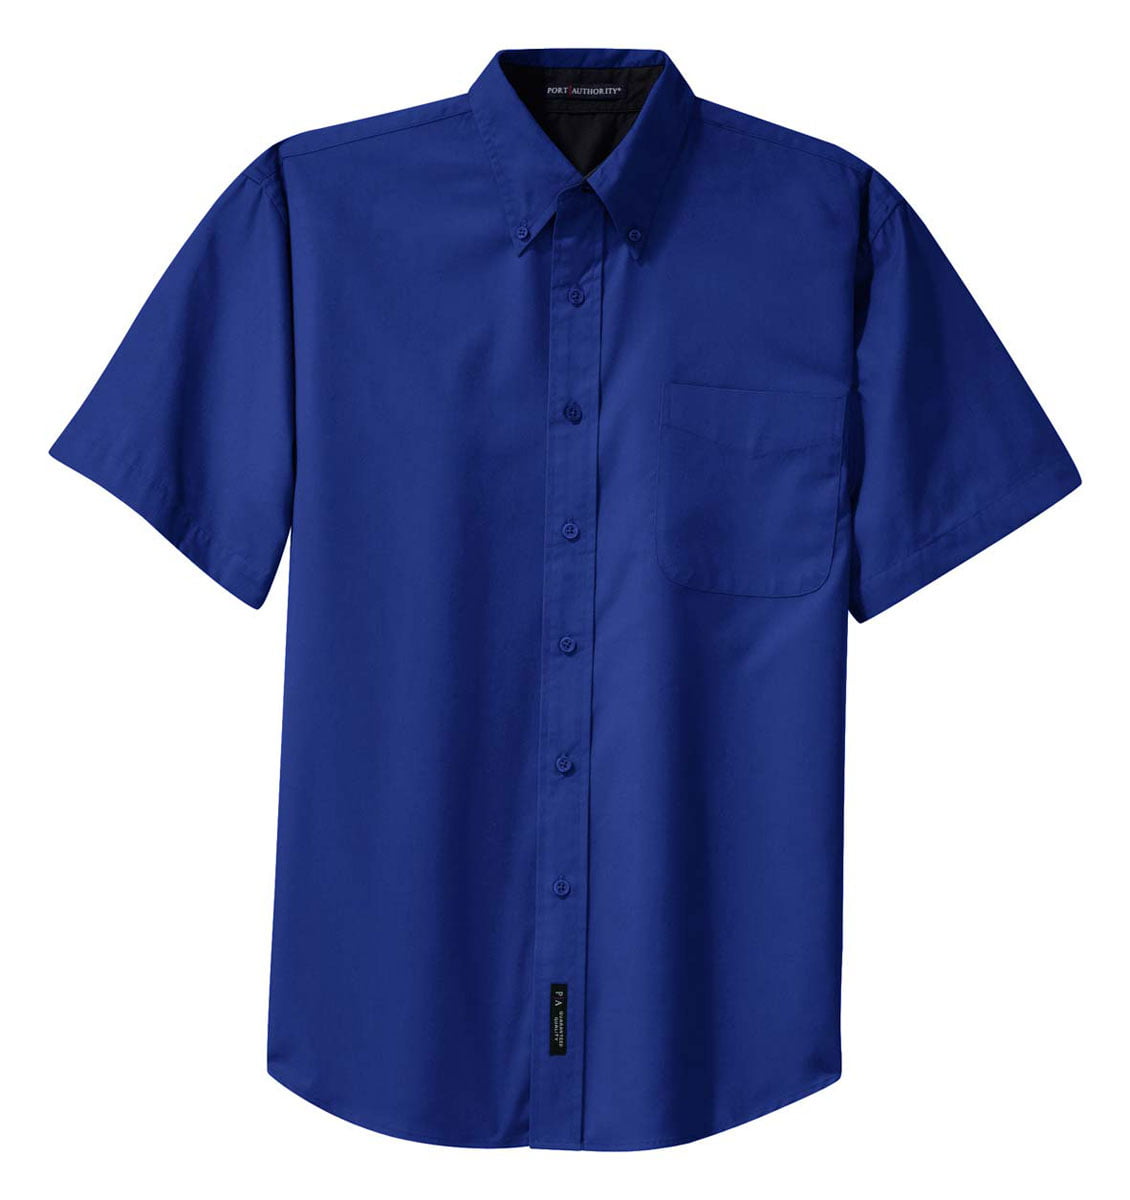 Men's Button-Down Collar Shirt - Walmart.com